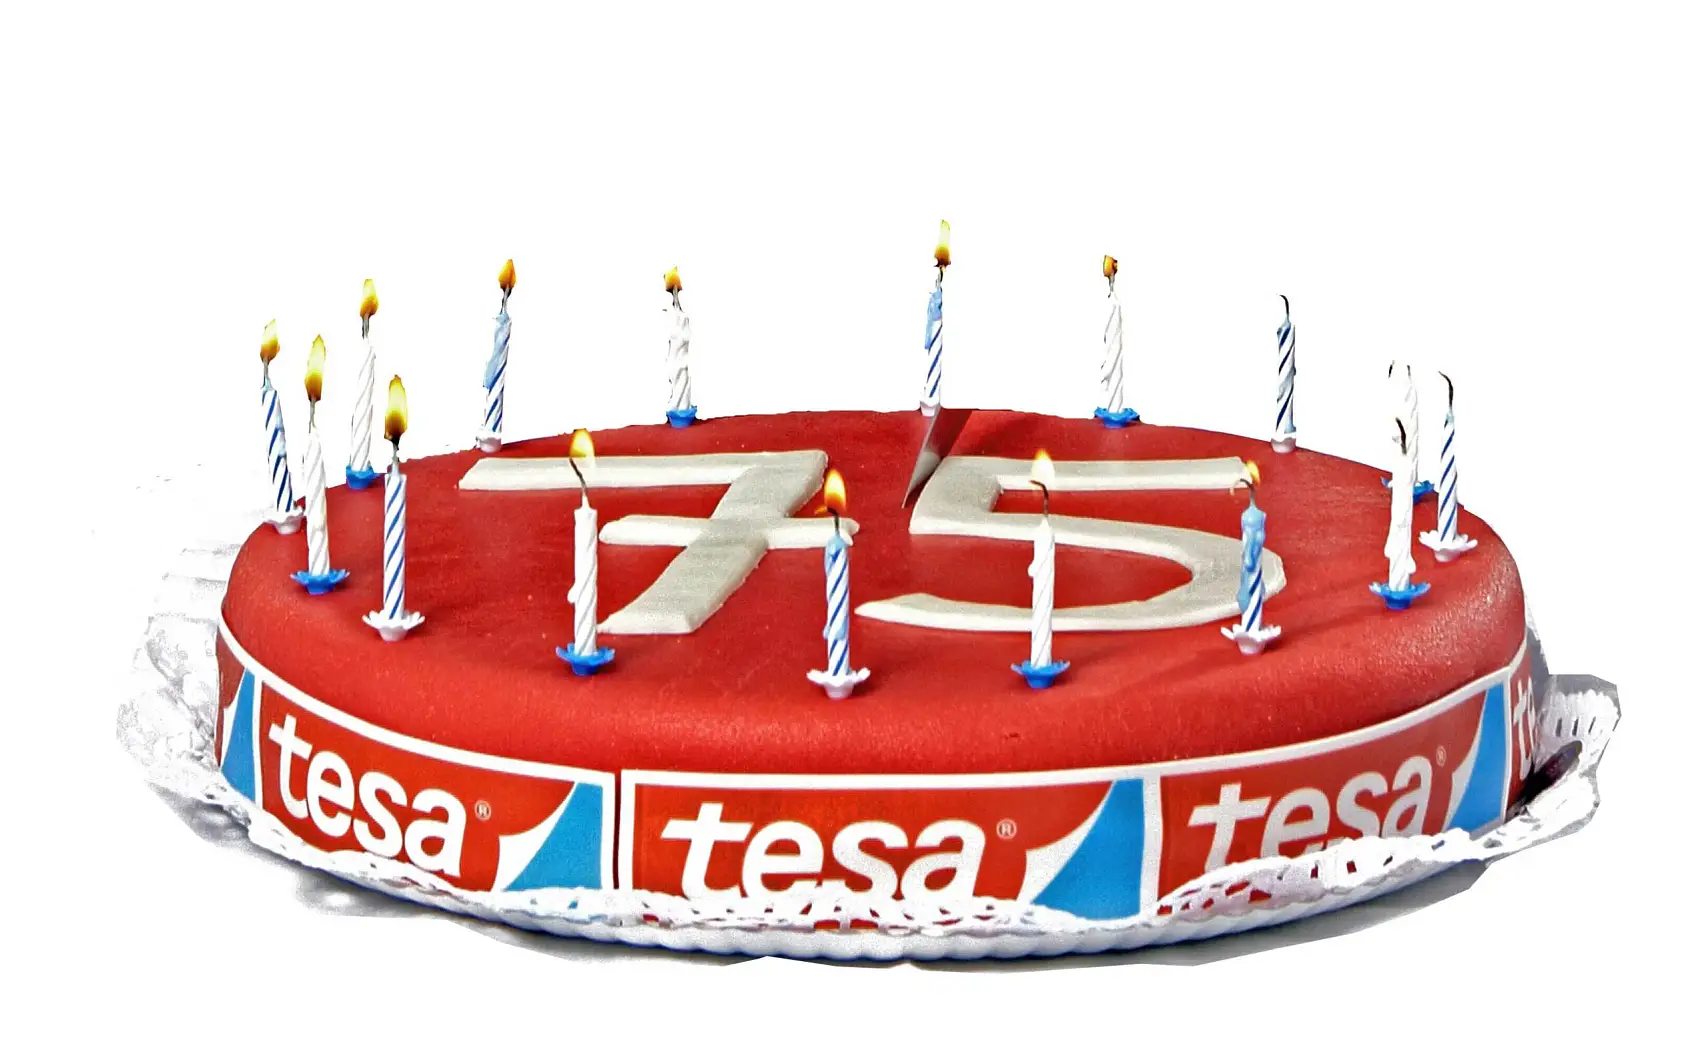 En 2011, tesa celebra su 75.º aniversario